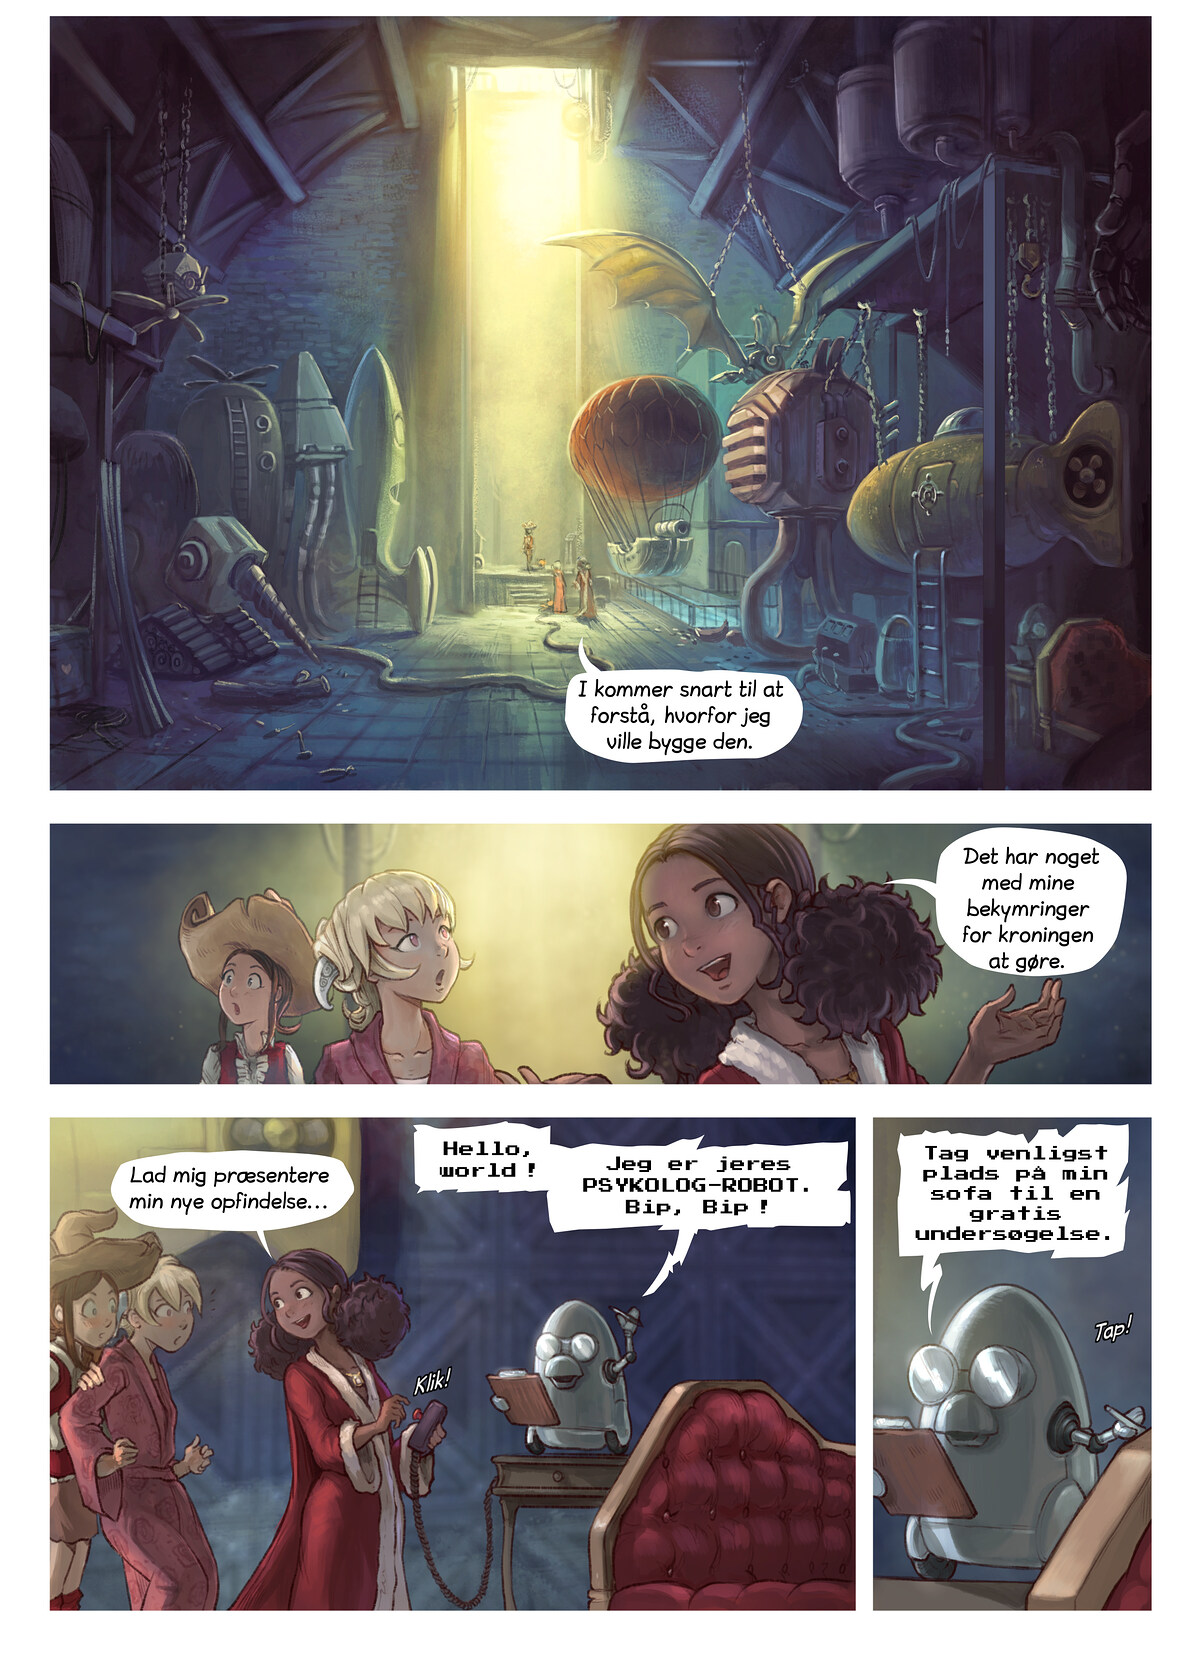 Episode 27: Korianders opfindelse, Page 3